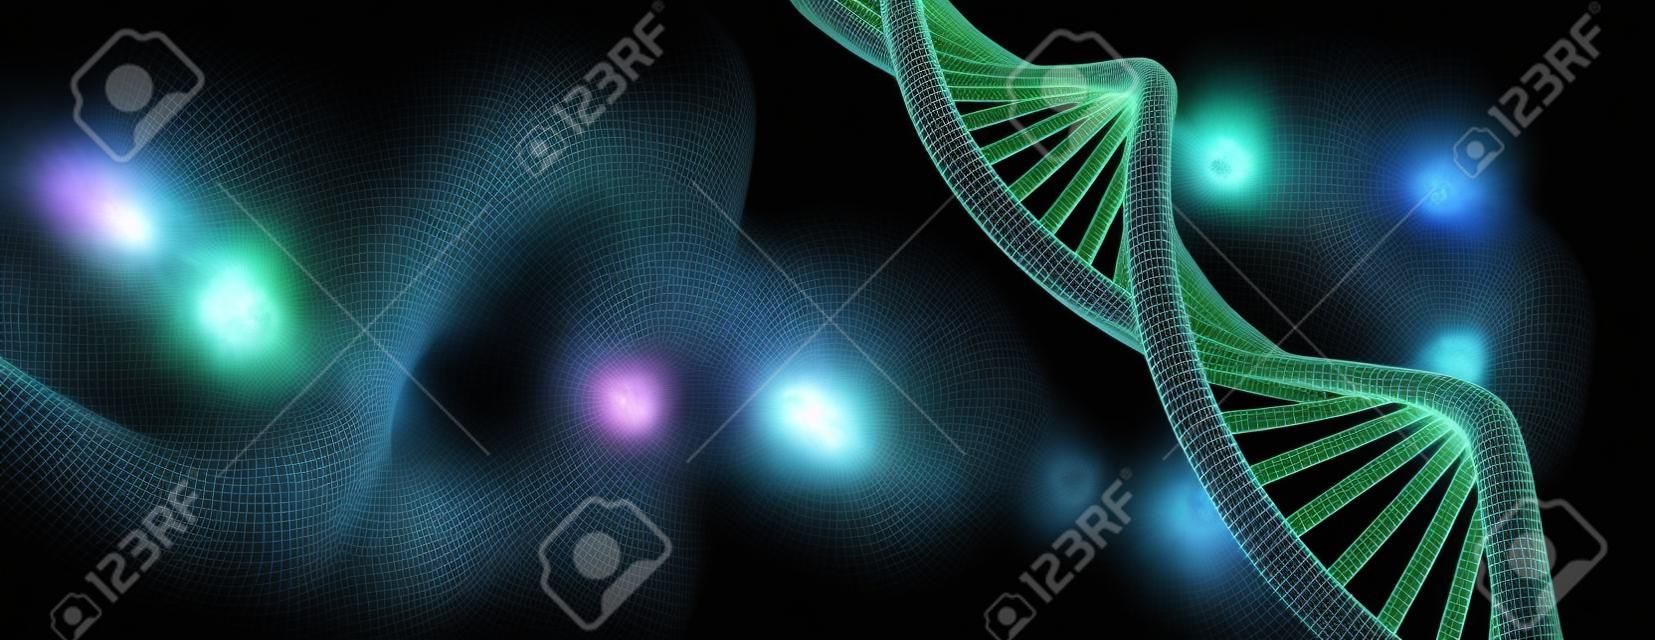 DNA molecule spiraalstructuren donkere achtergrond. Biologie, wetenschap en medische technologie concept. 3D illustratie